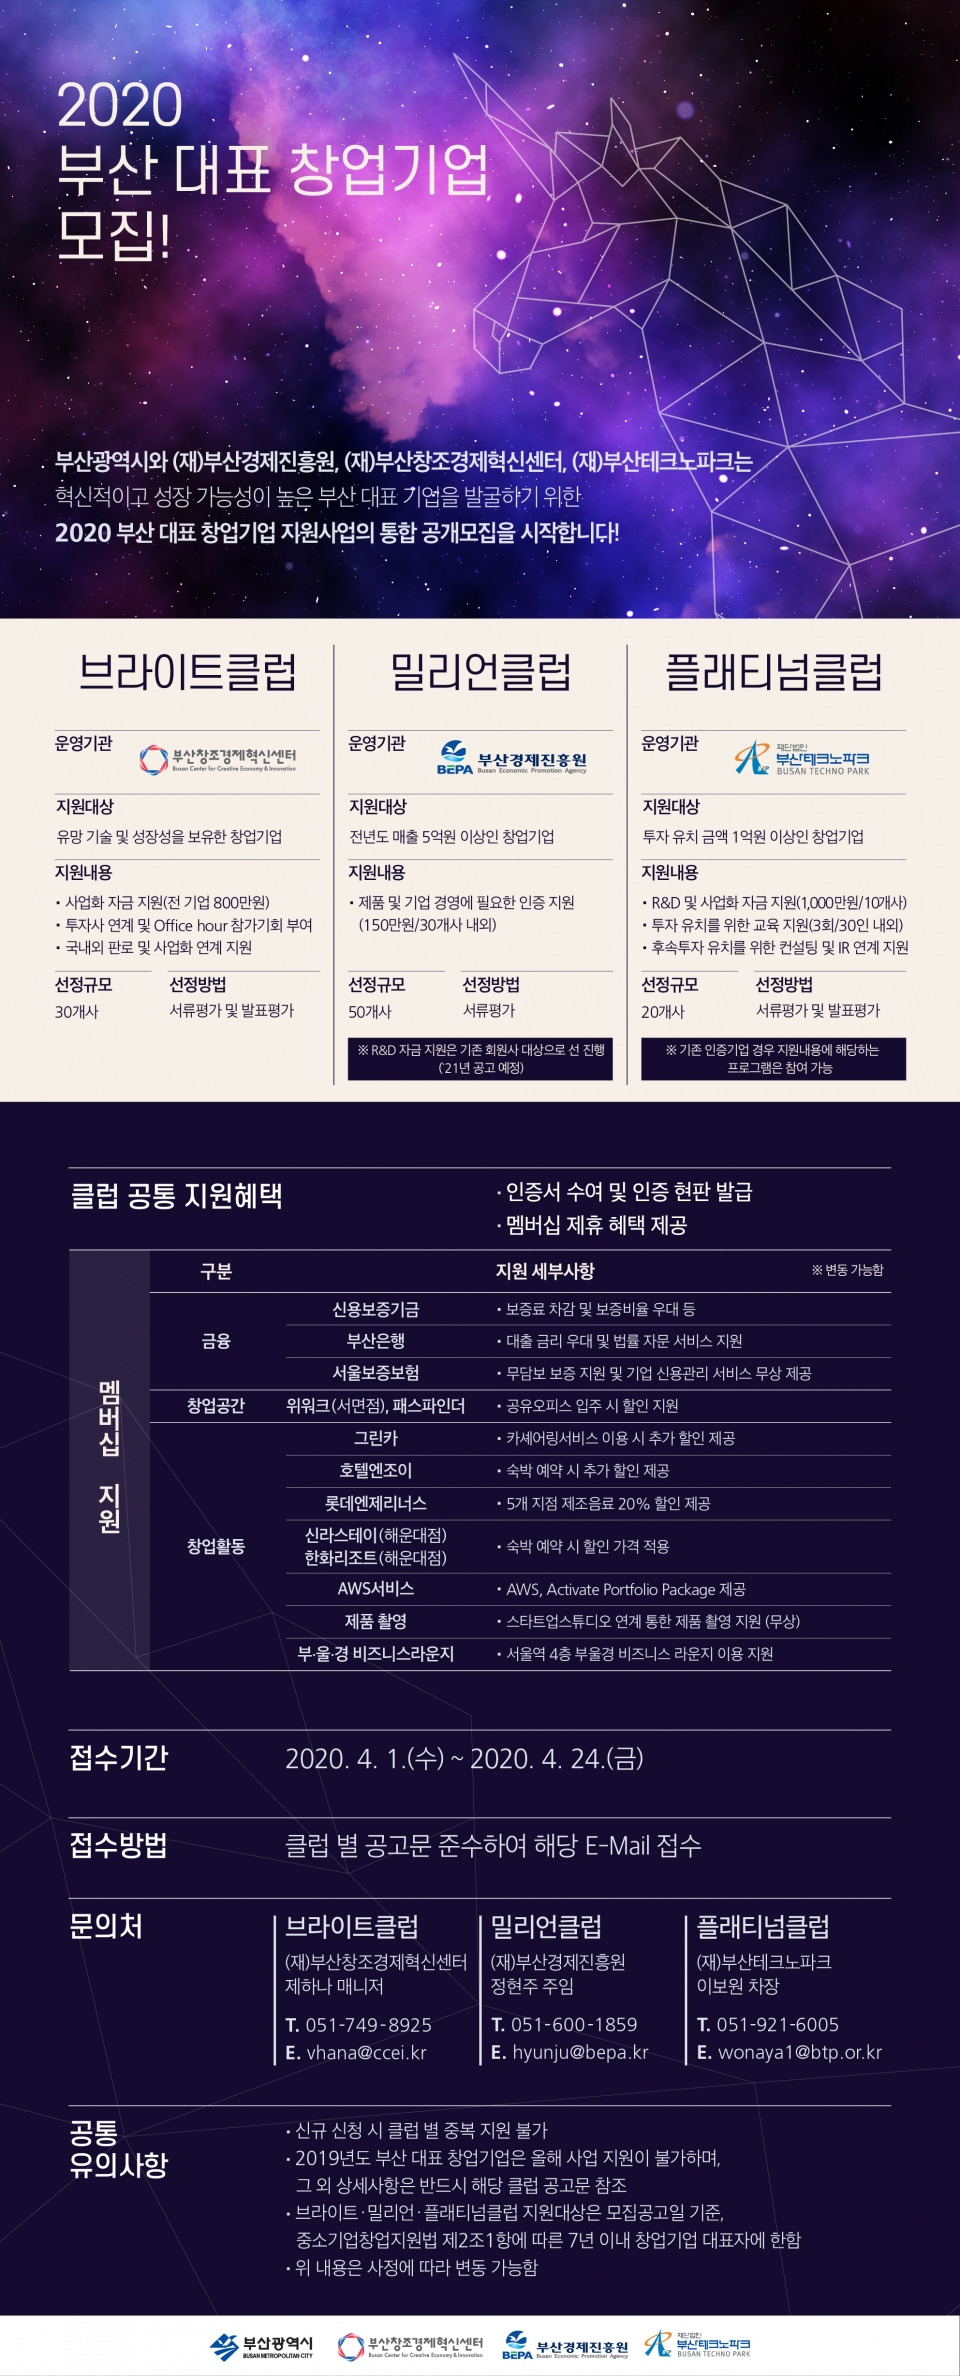 ‘부산 대표 창업기업 지원사업’ 포스터. (출처: 부산창조경제혁신센터)